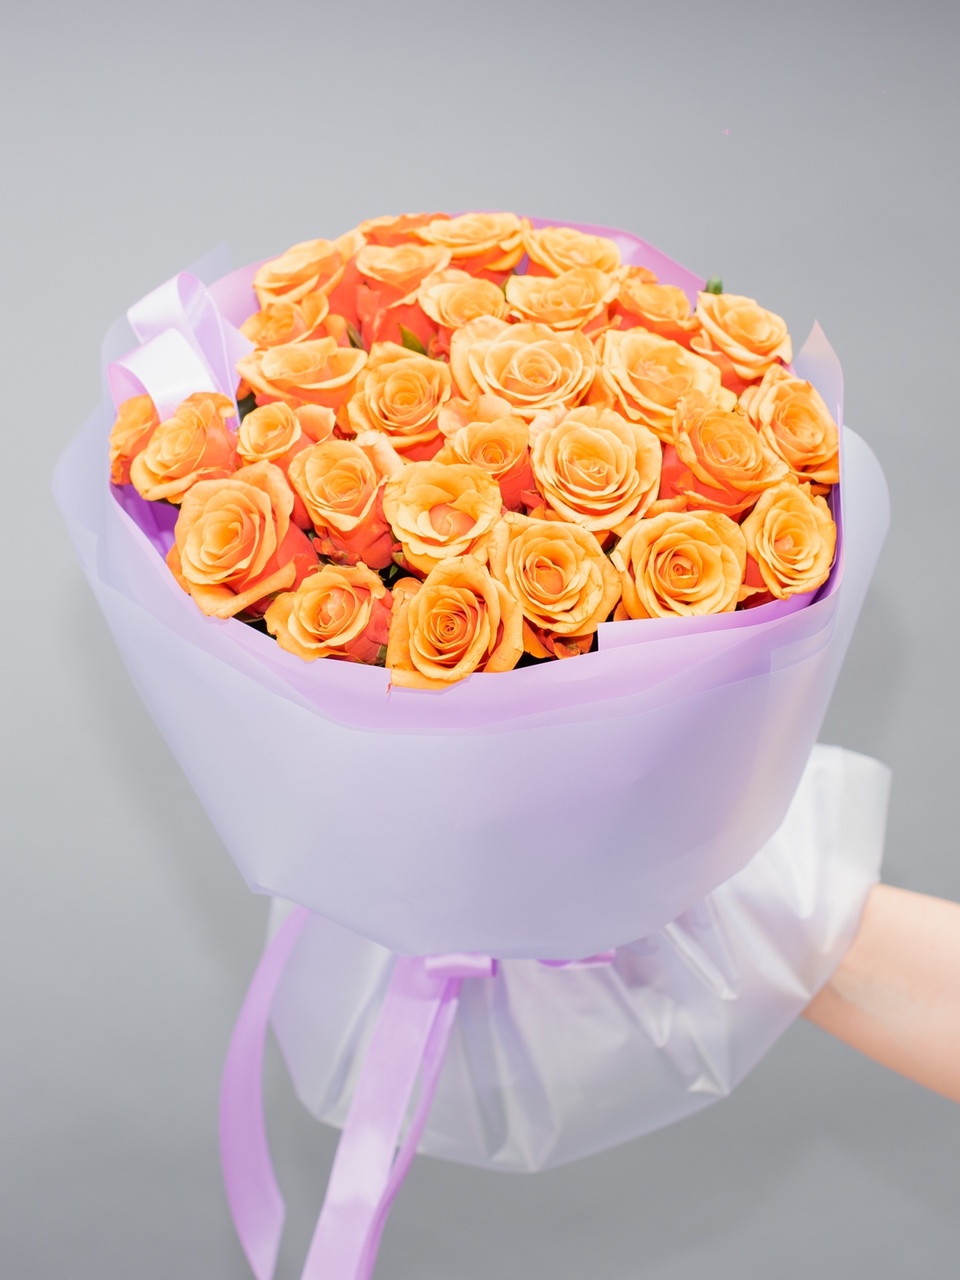 Букет розы - 0 ₽, заказать онлайн.